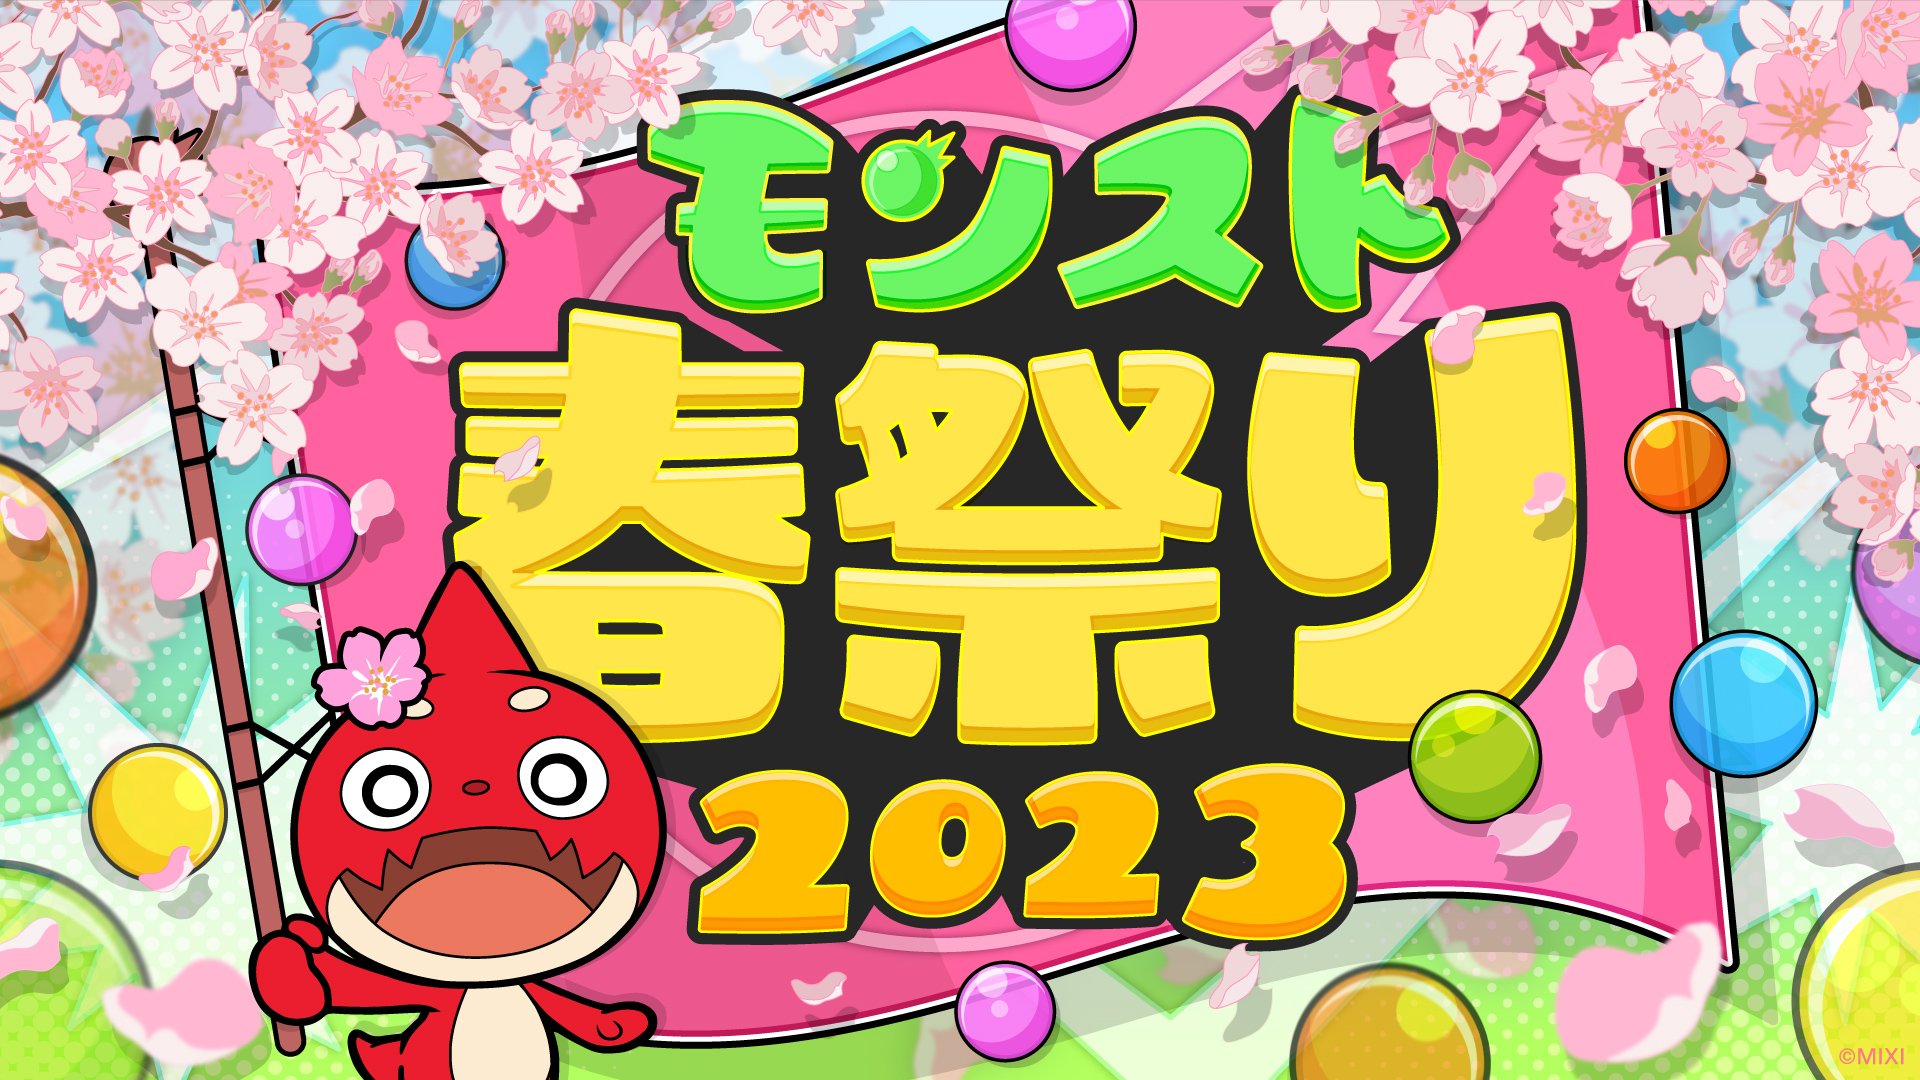 【大会情報】MONST SPRING CUP 2023【2023年4月29日】